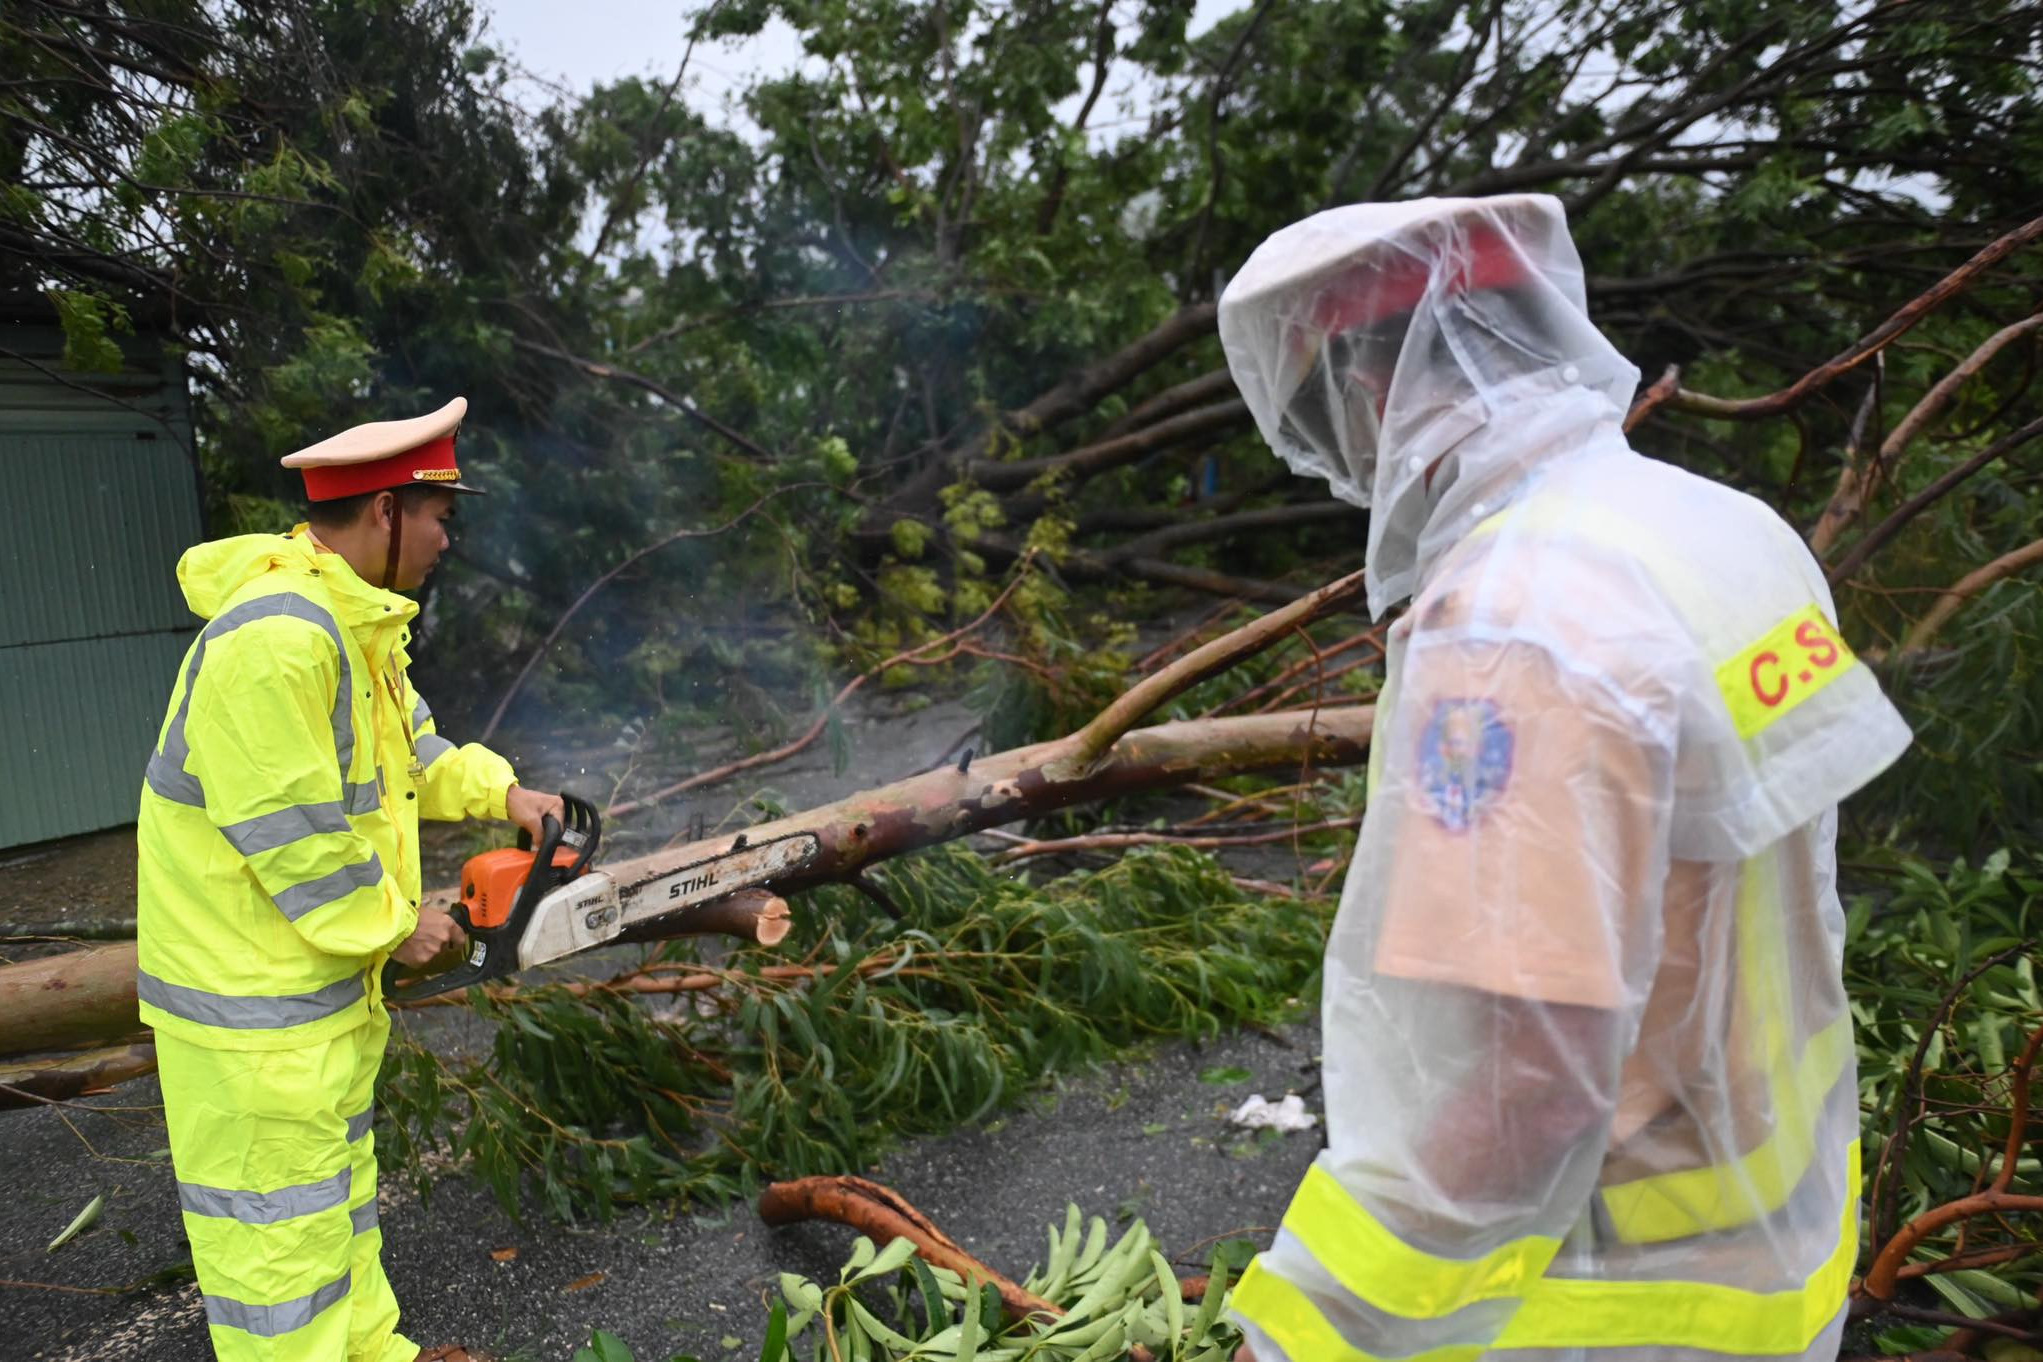 台风“奥鹿”过境 越南多地出现房屋损坏情况